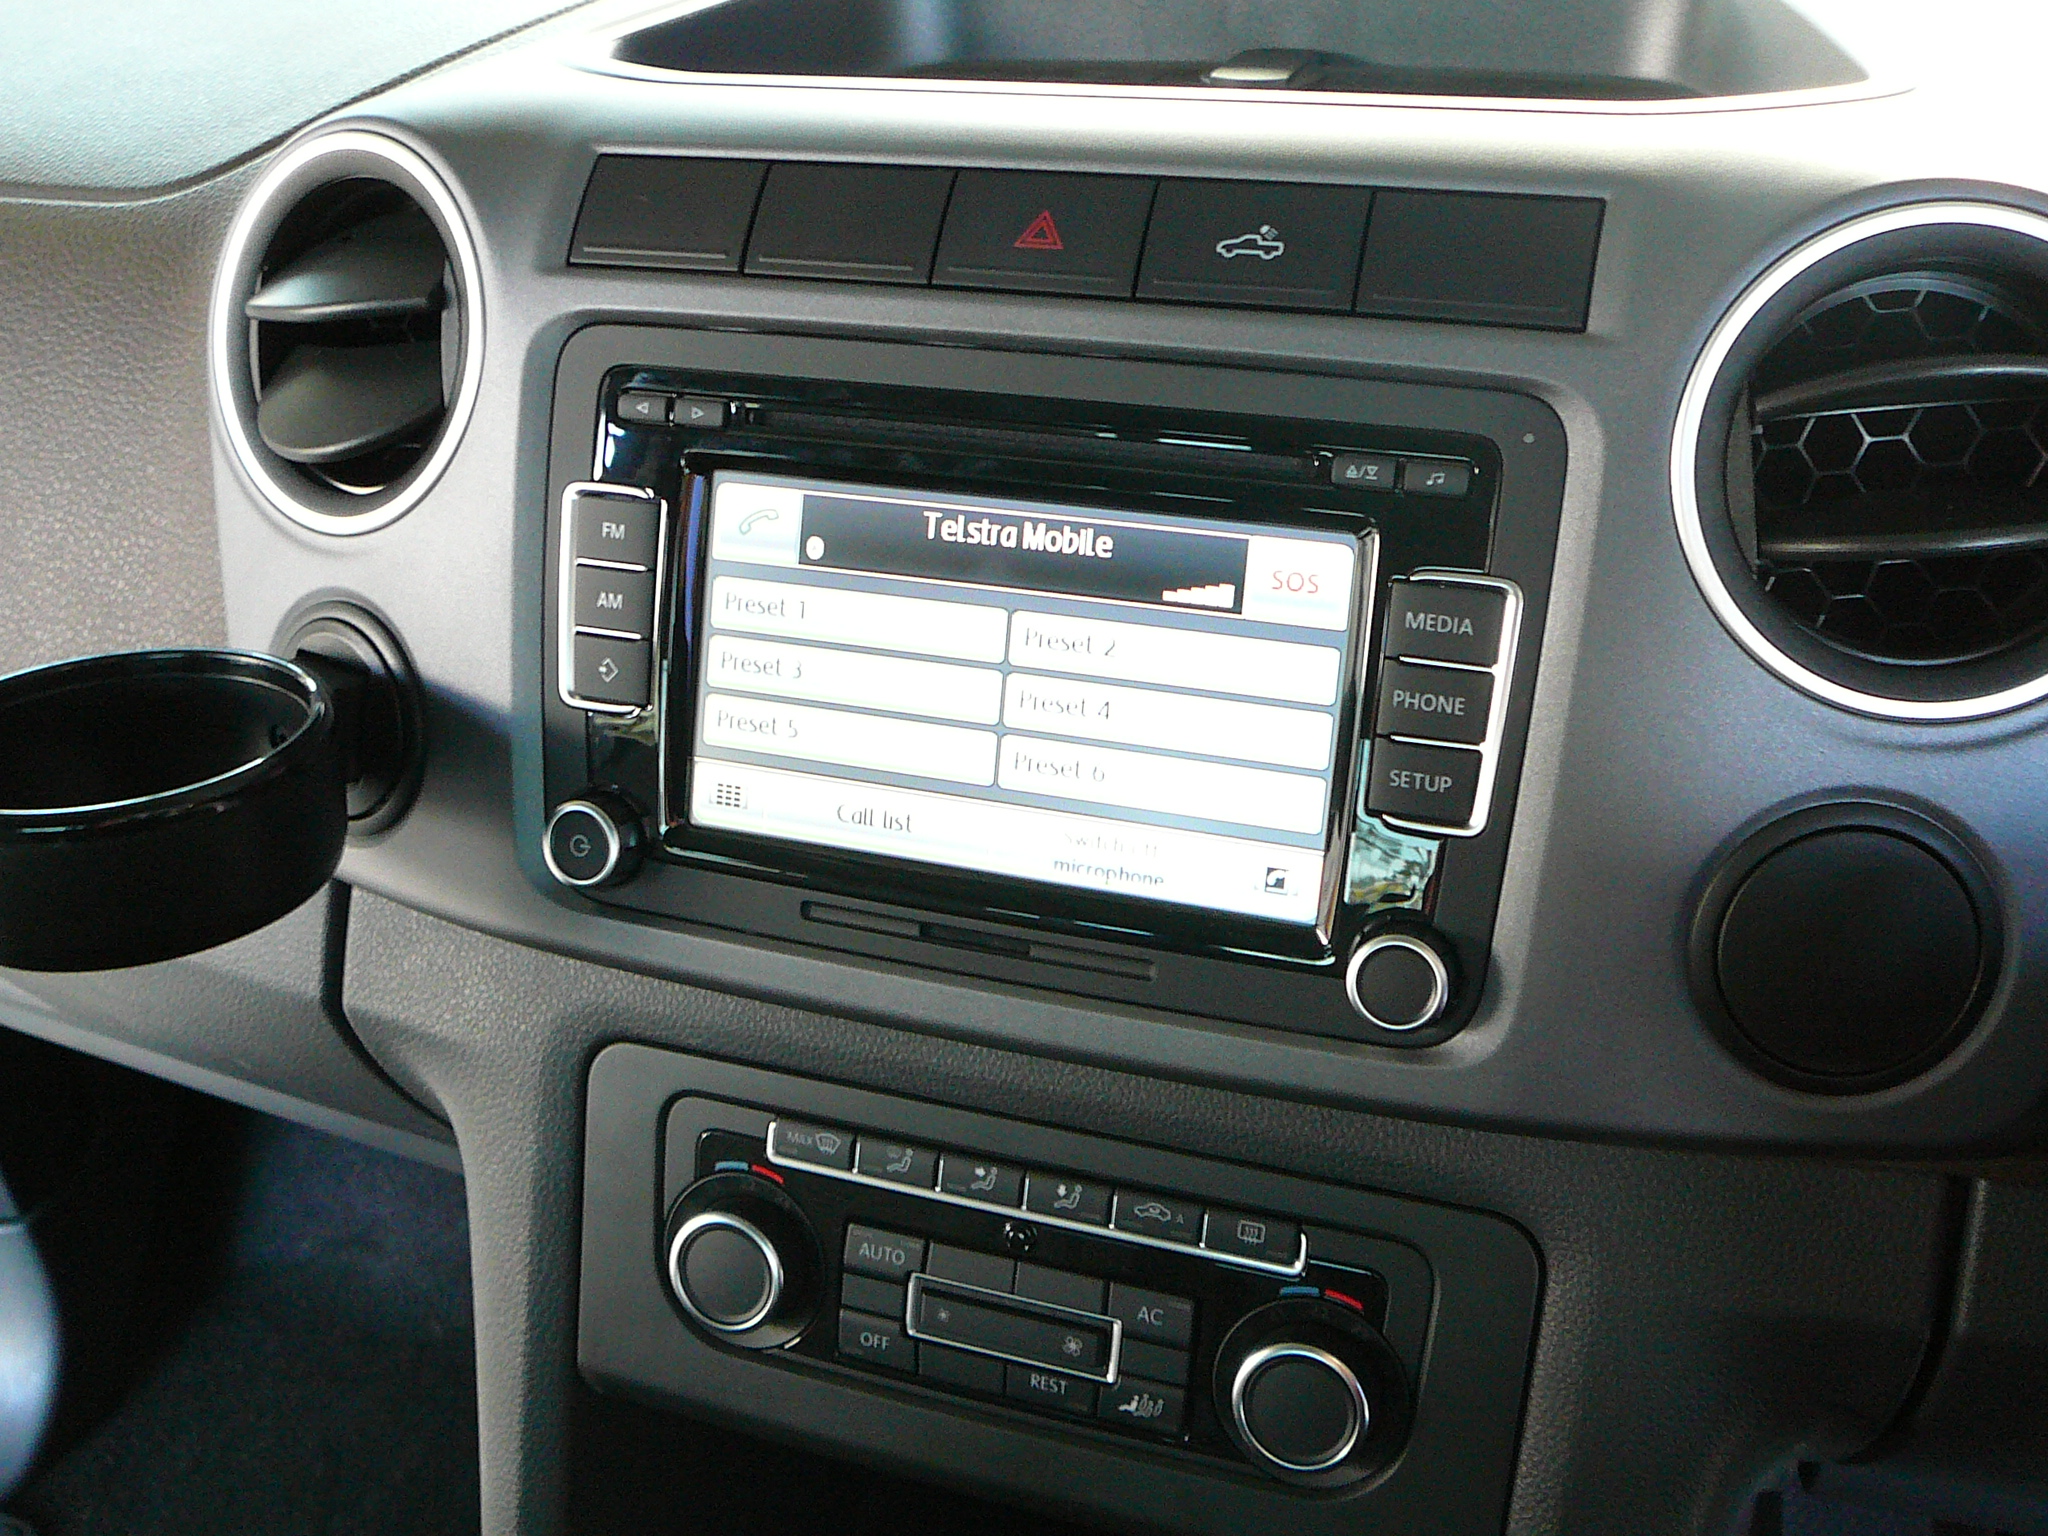 VW Amarok 2011 Intergrated Bluetooth Handsfree